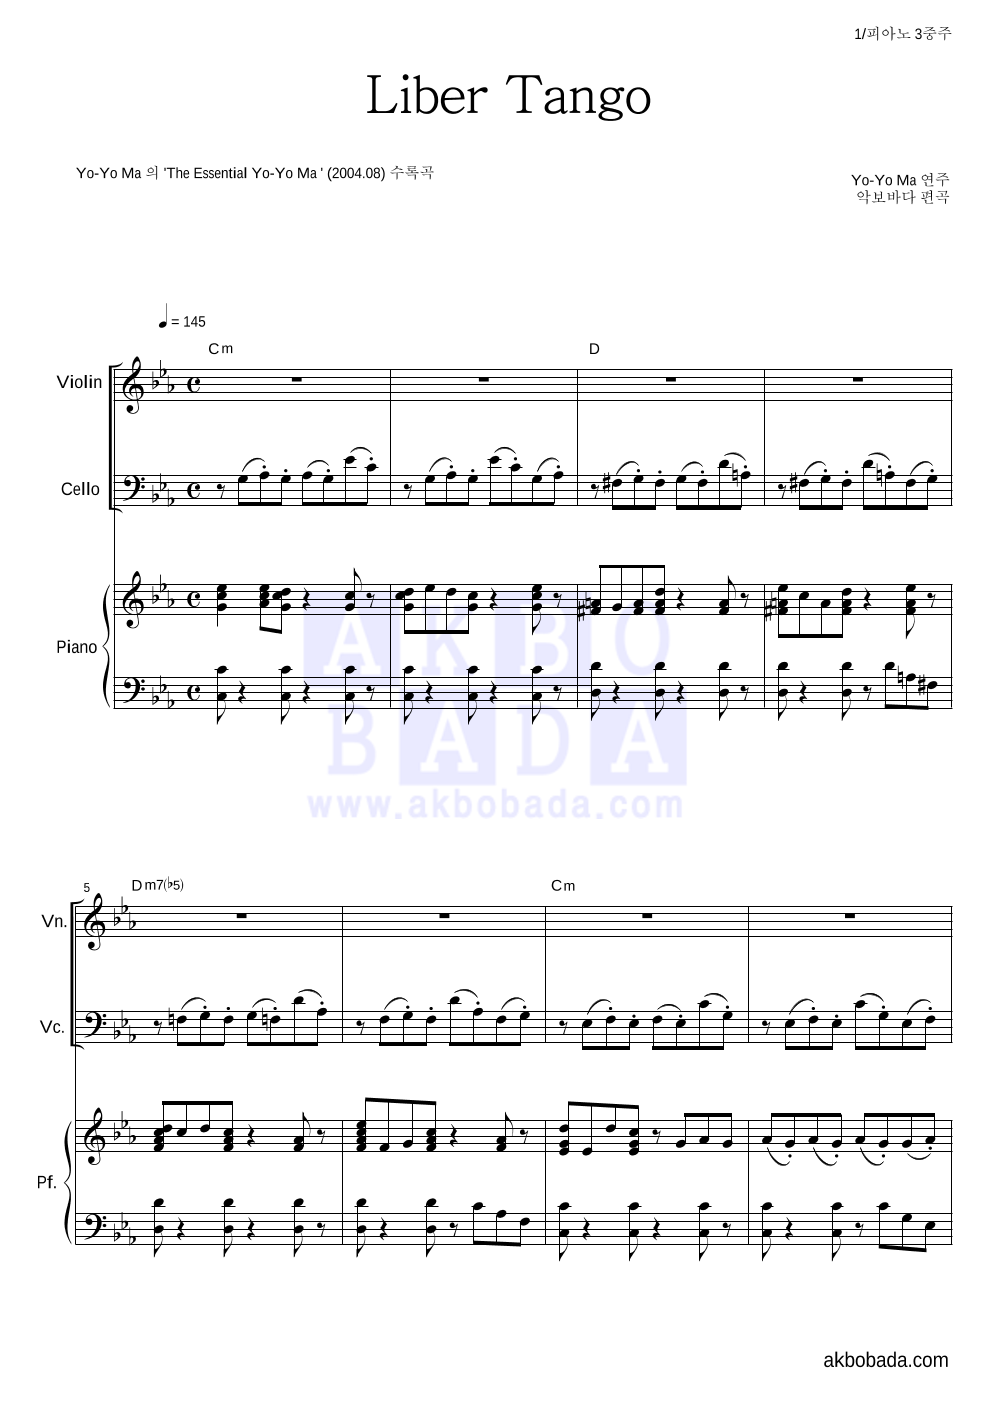 Yo-Yo Ma - Piazzolla - Libertango 피아노3중주 악보 